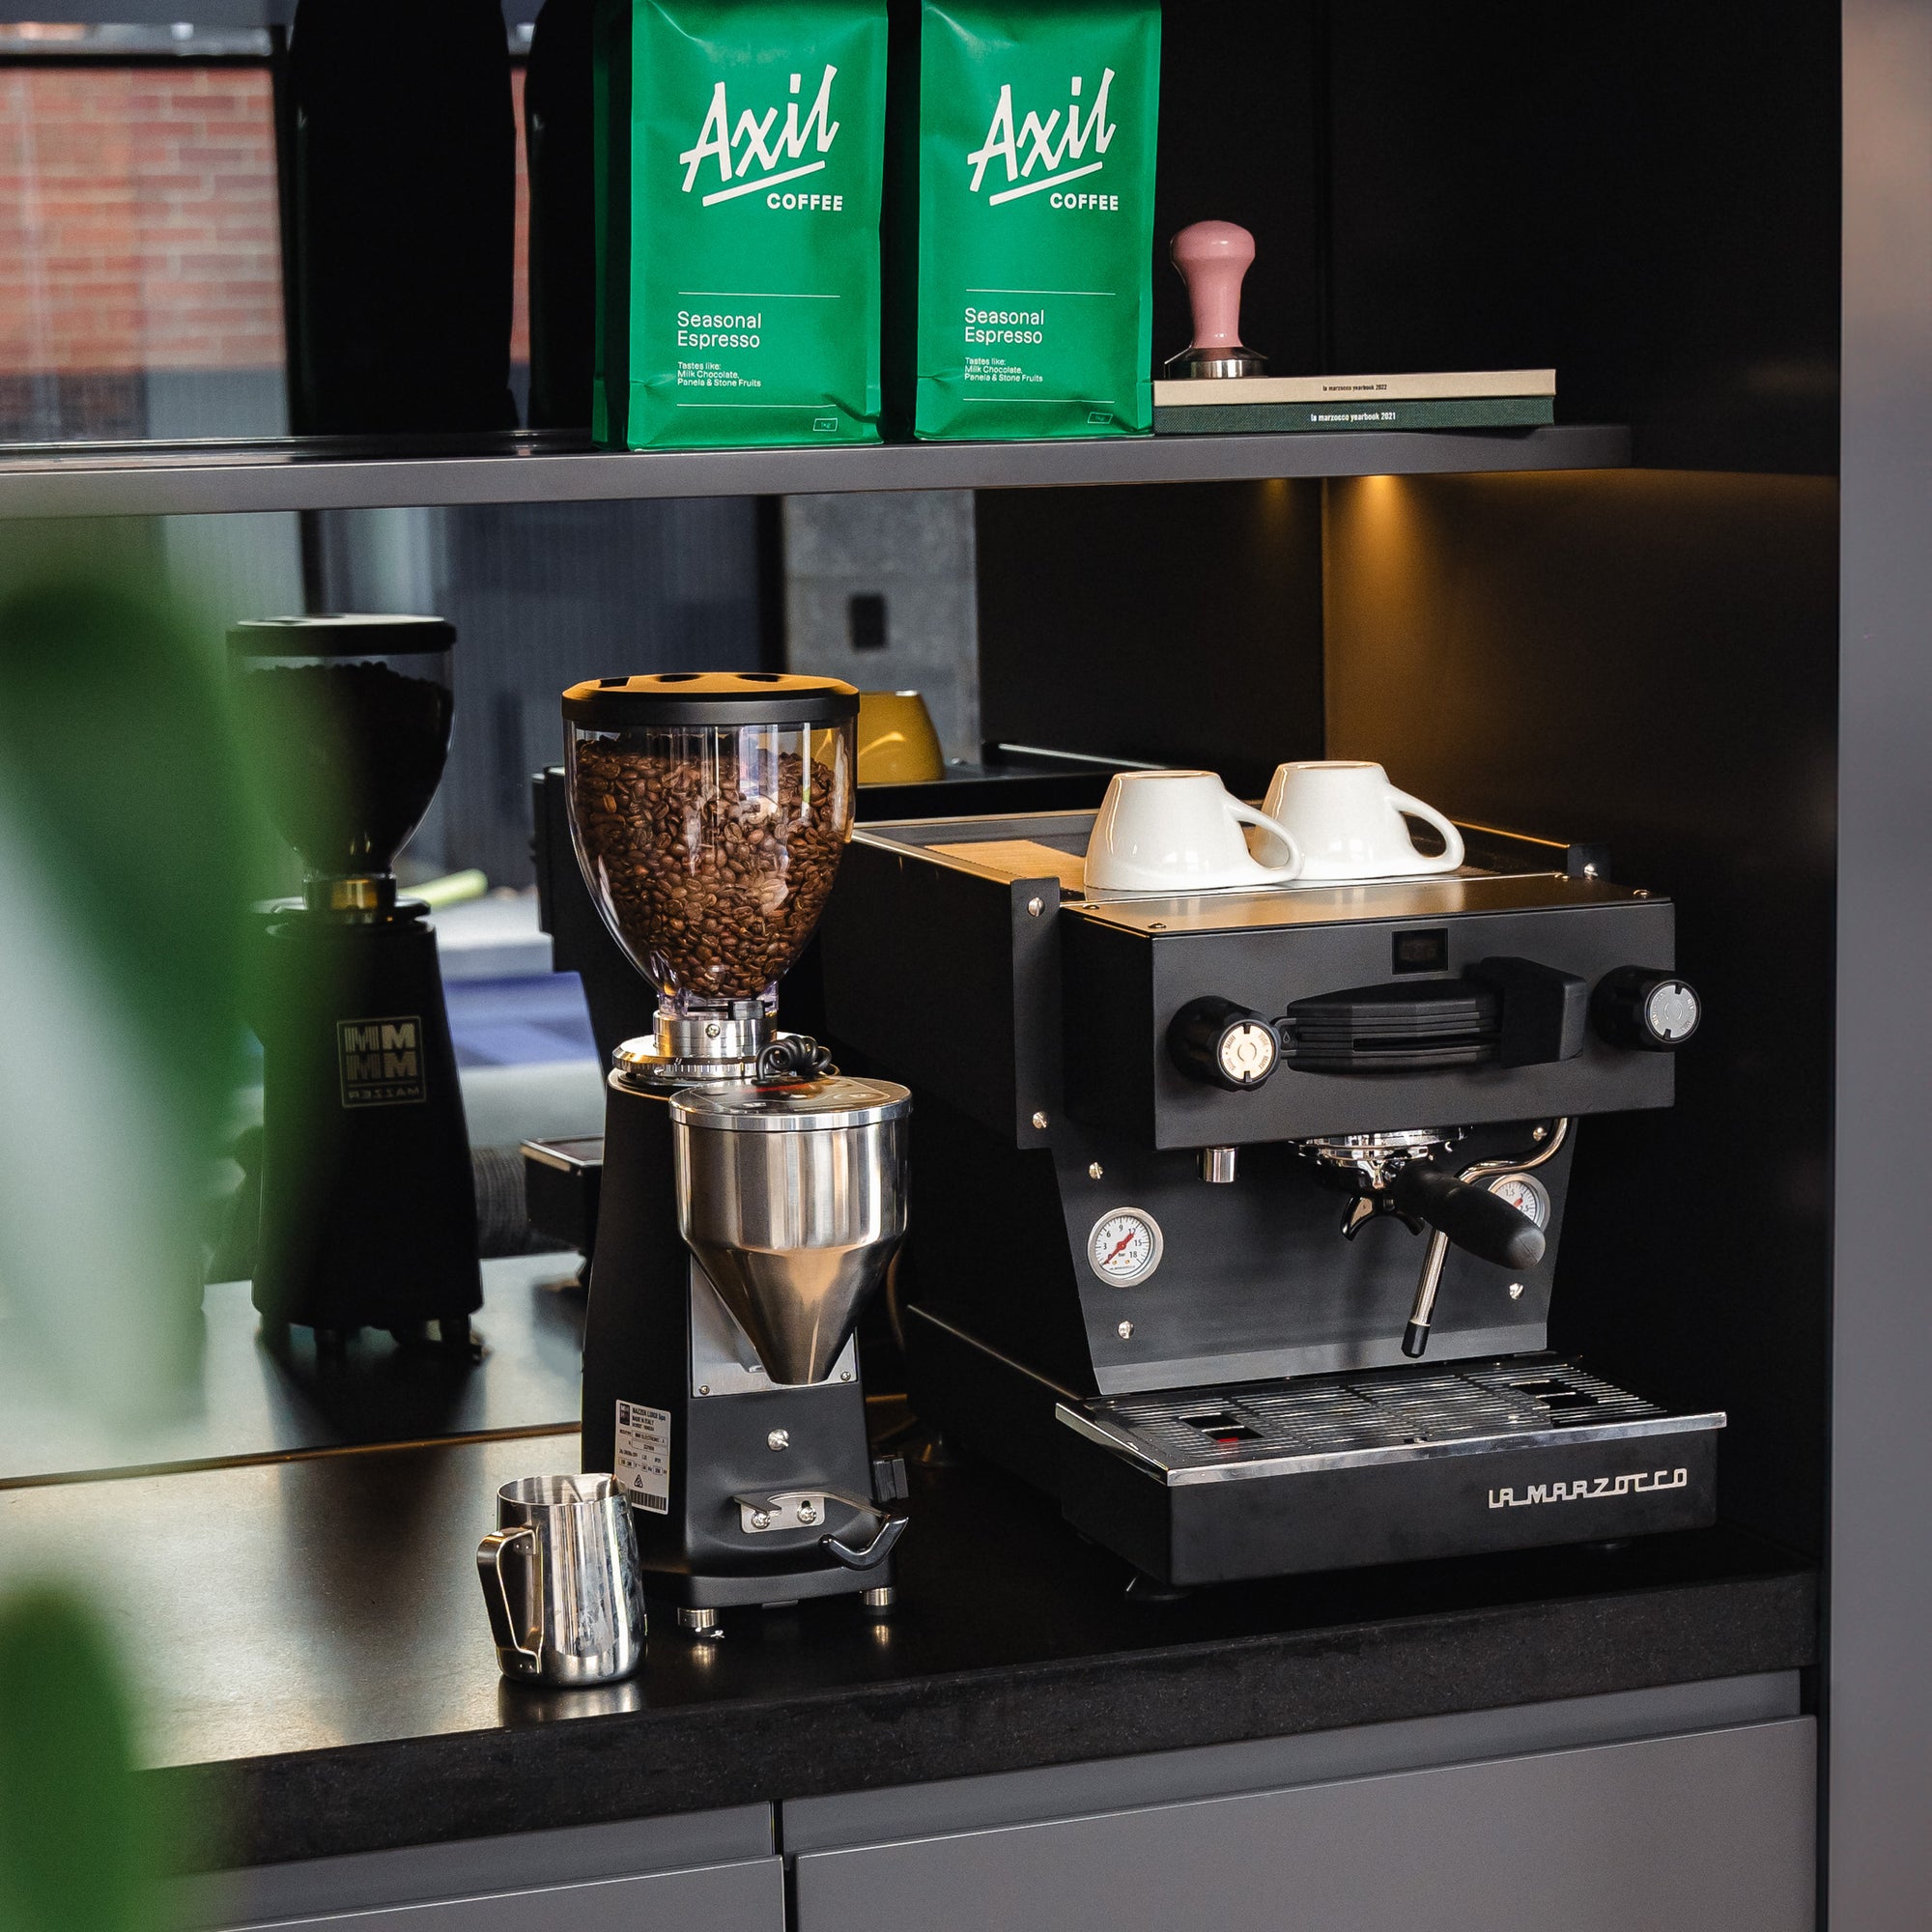 Axil Coffee and La Marzocco 